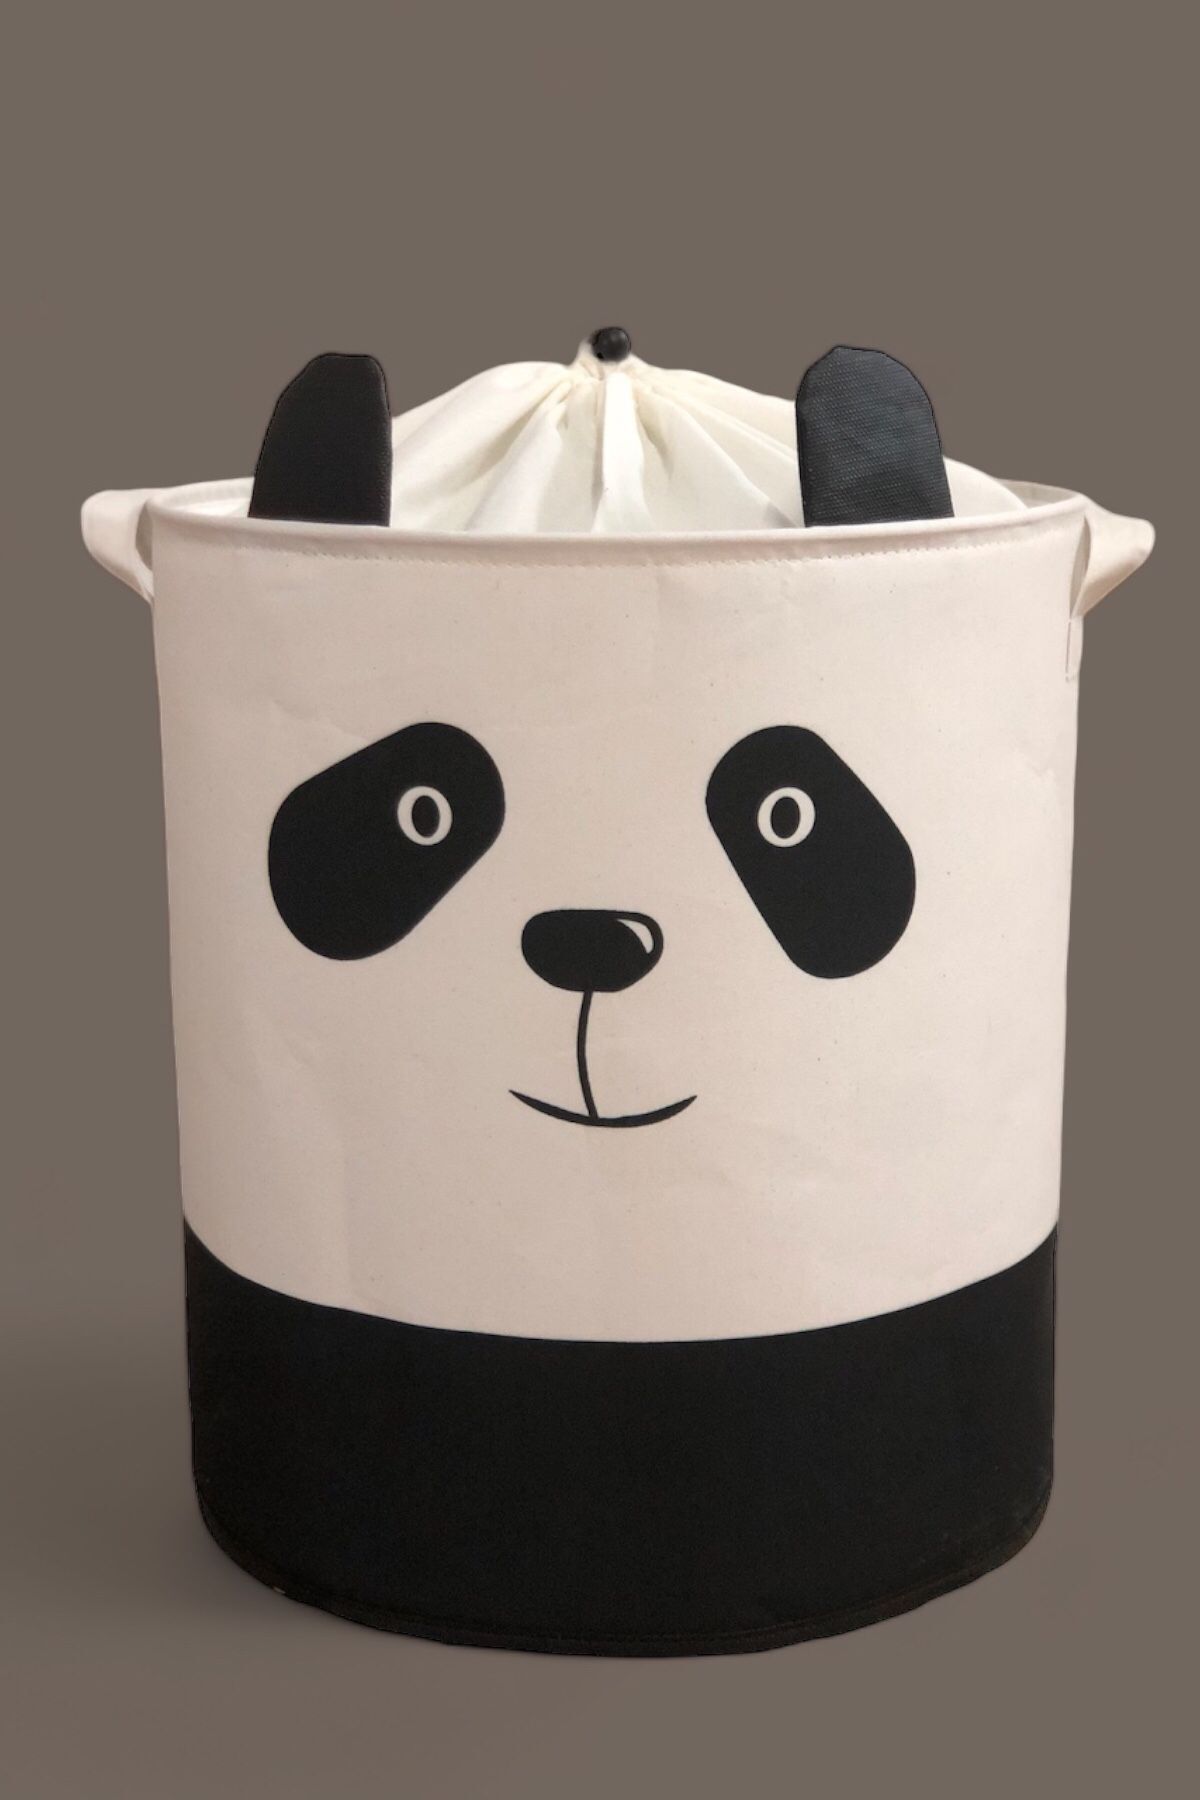 PRENDİ HOME Panda Tasarımlı Bebek Çocuk Odası Ağzı Büzgülü Düzenleyici Saklama Kutusu Oyuncak Kirli Sepeti 37x40